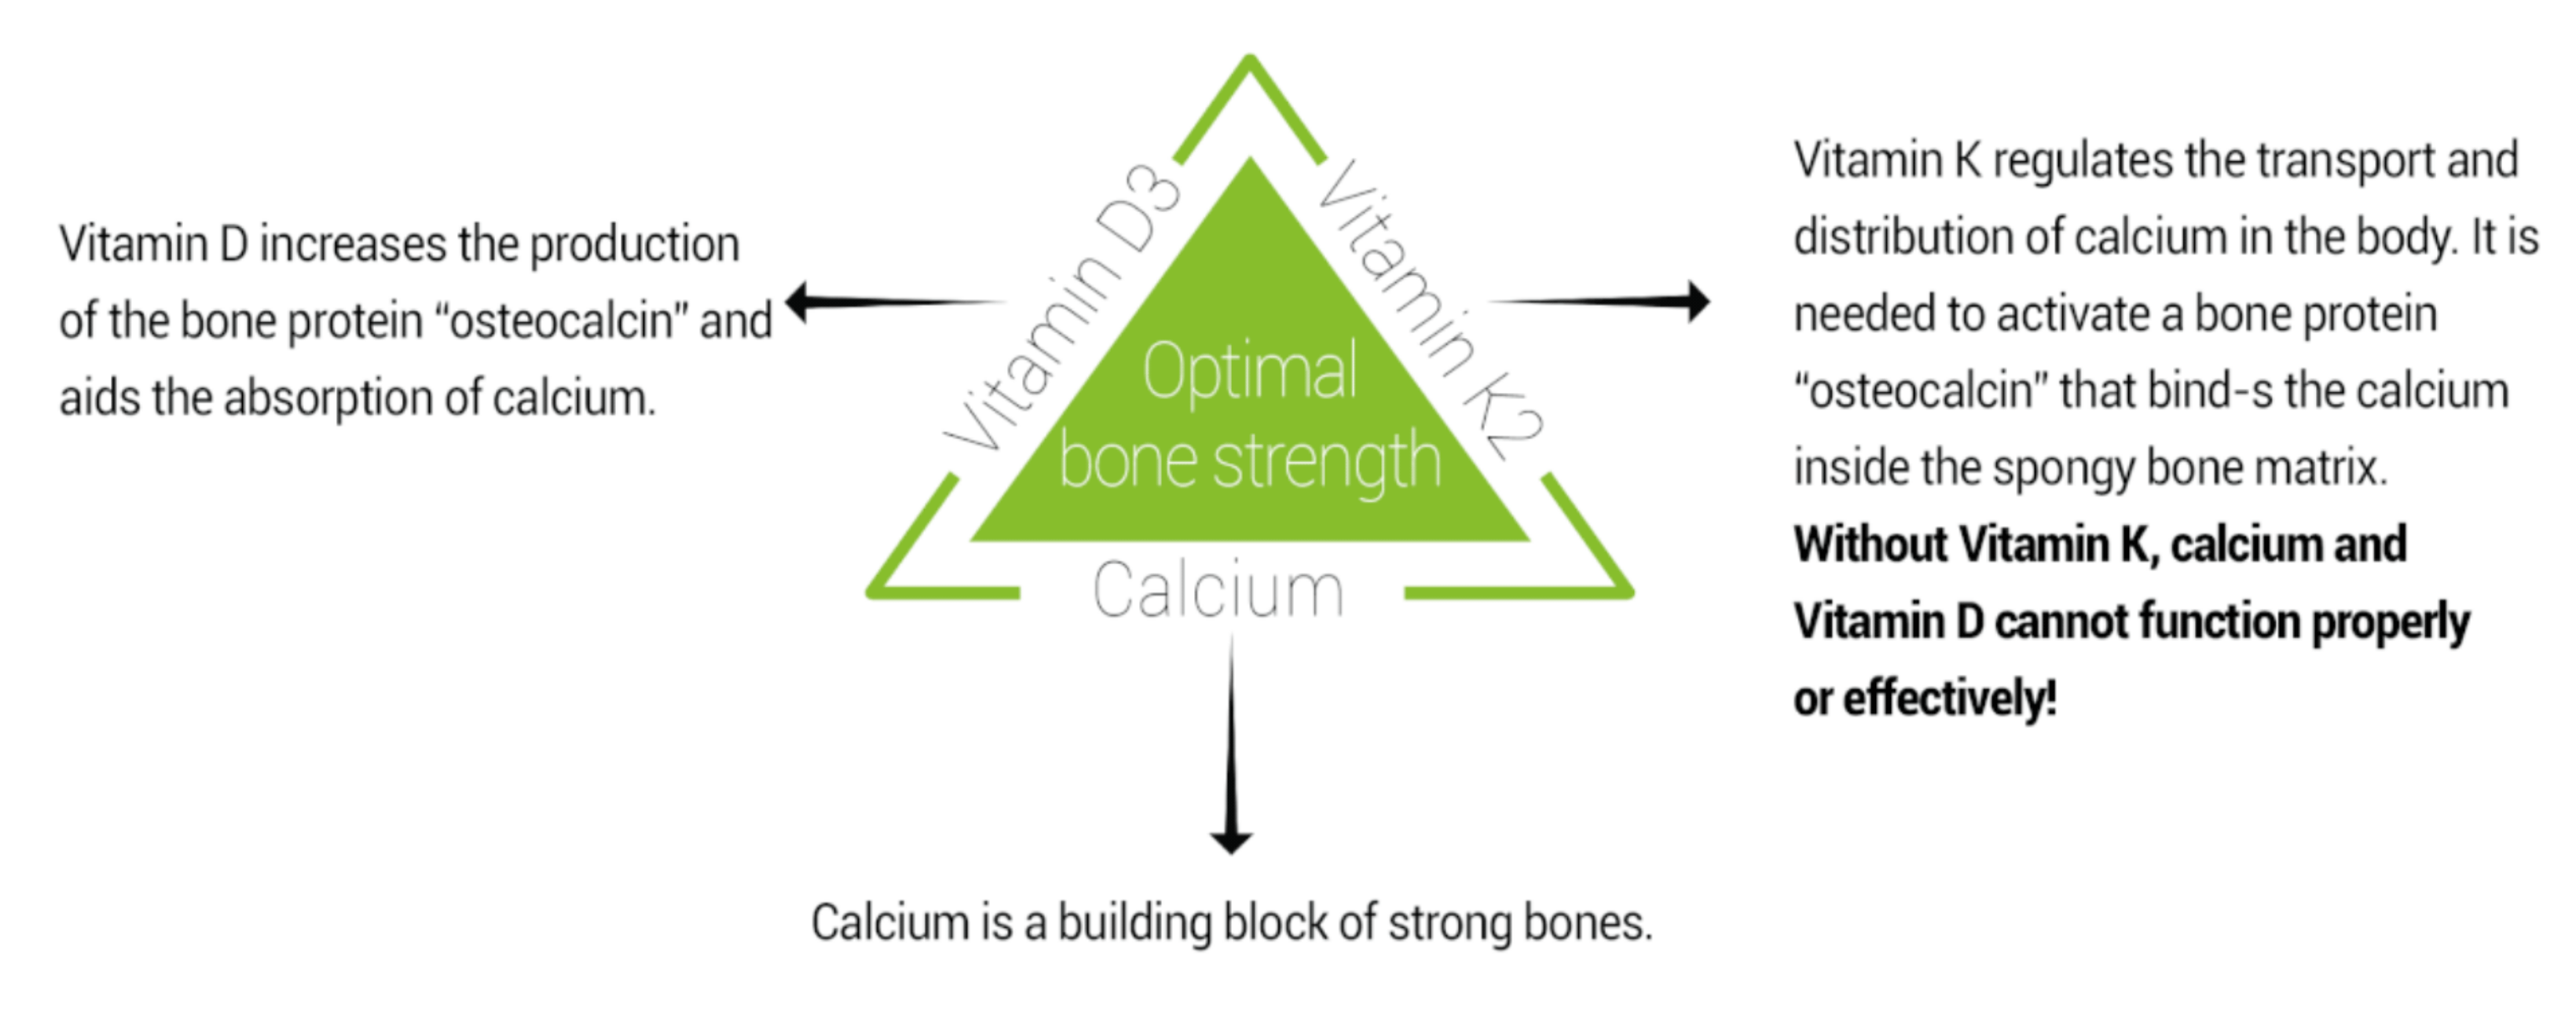 optimal bone strength